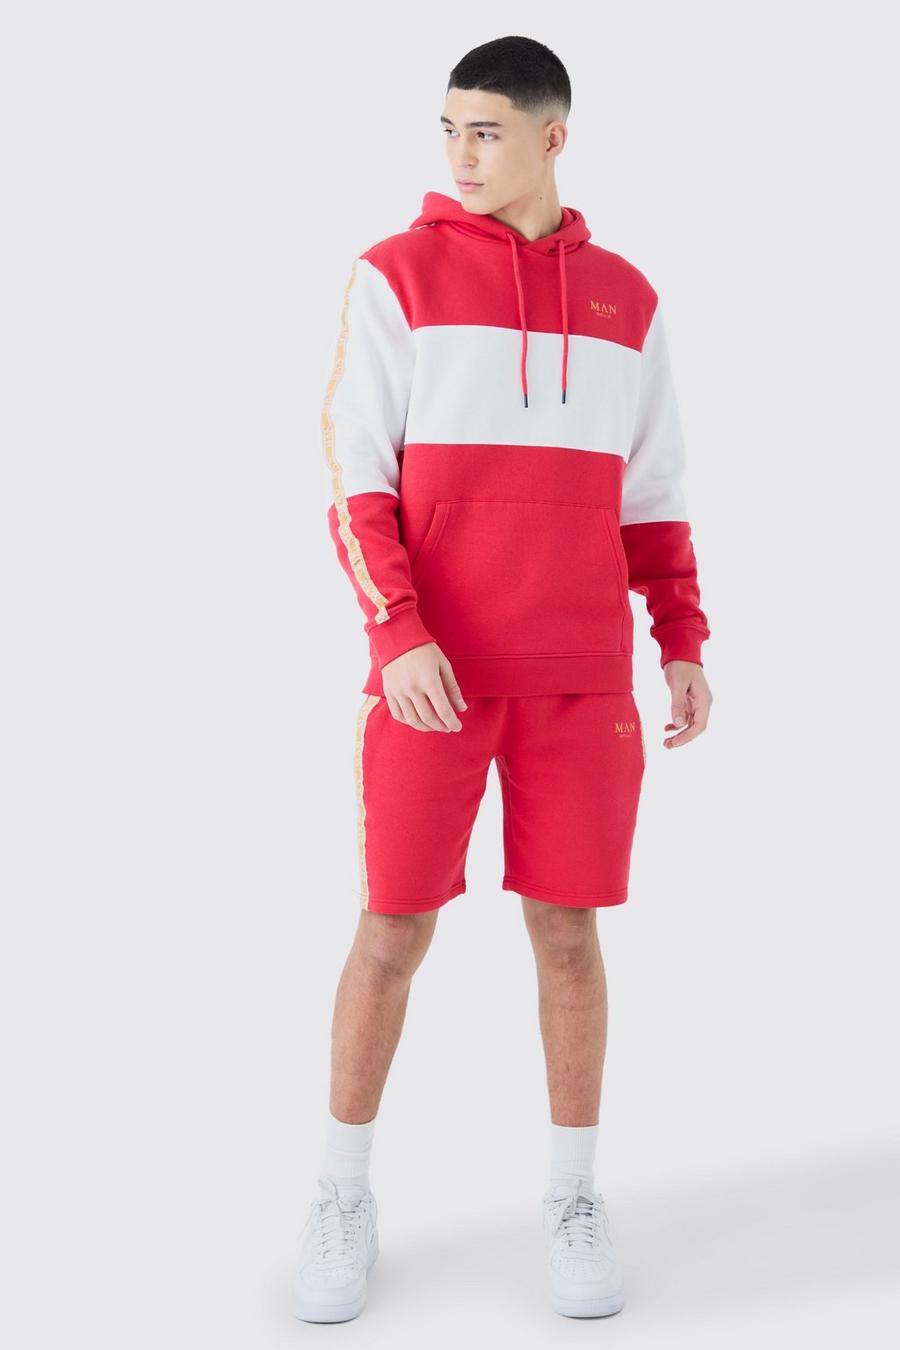 Kurzer Colorblock Trainingsanzug mit Man-Streifen, Red